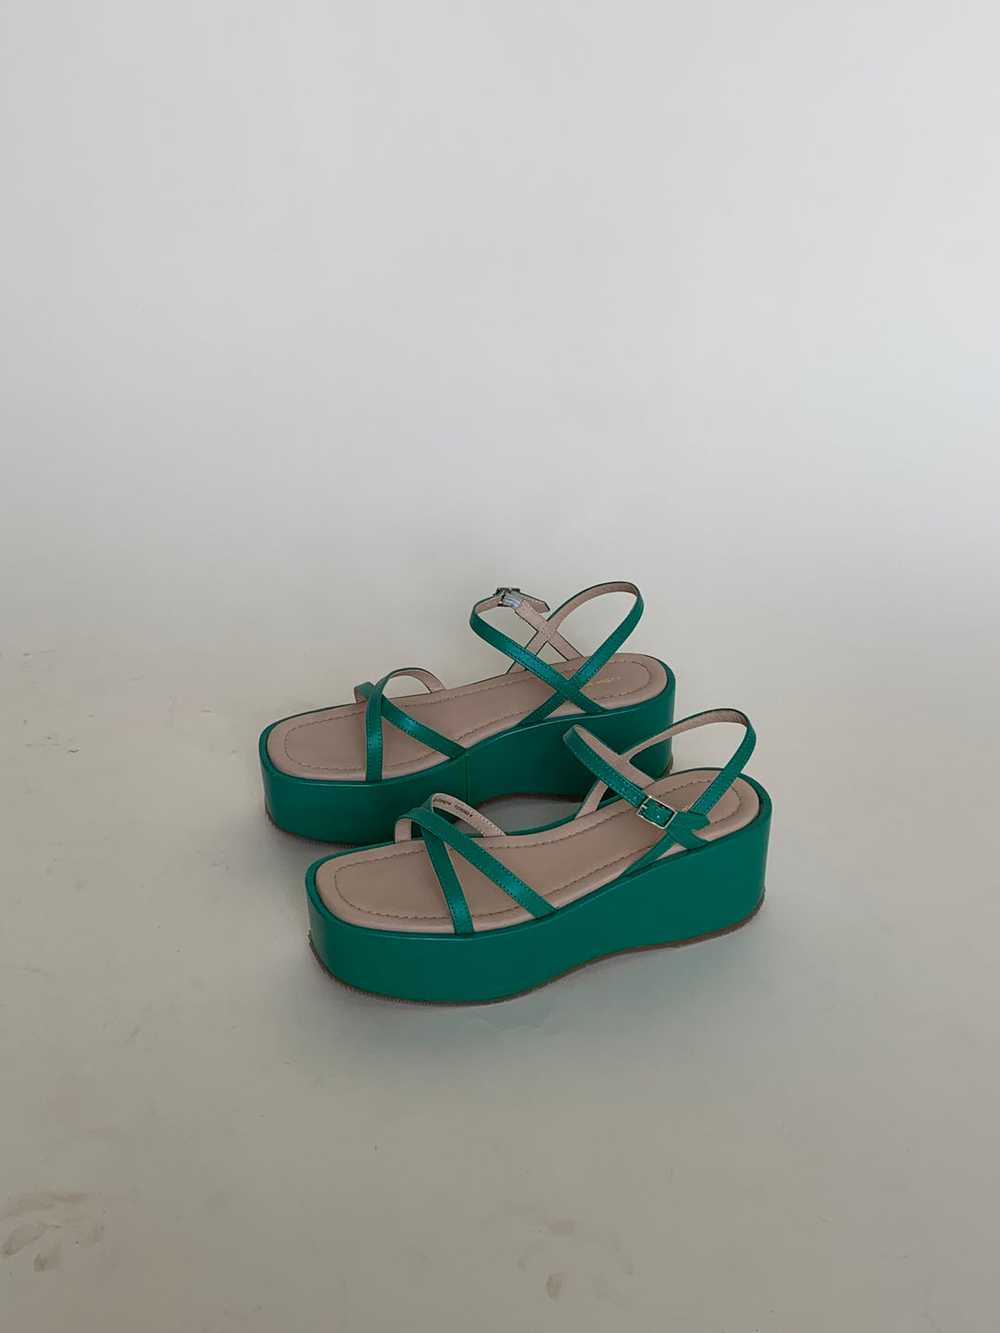 Green platform sandals - image 4